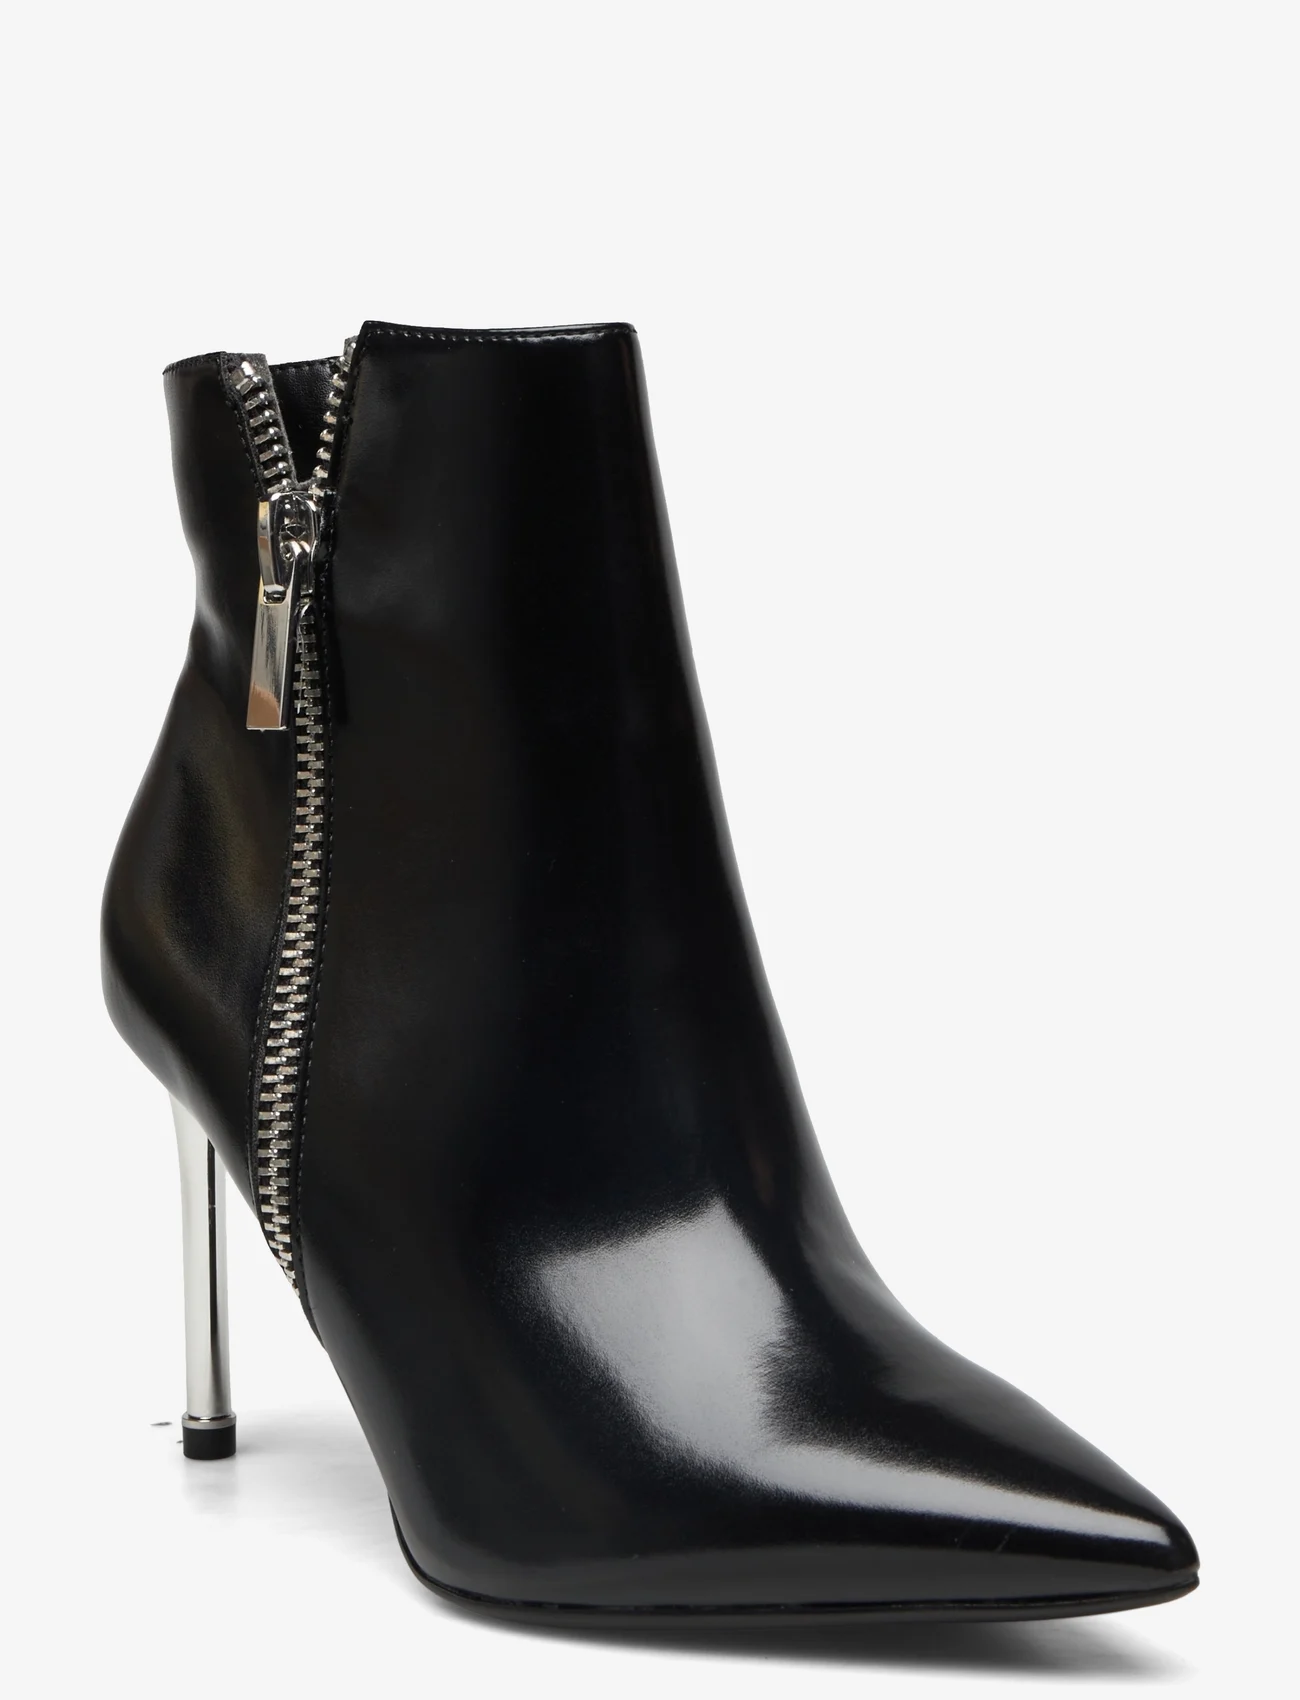 Tamaris - Women Boots - hohe absätze - black - 0